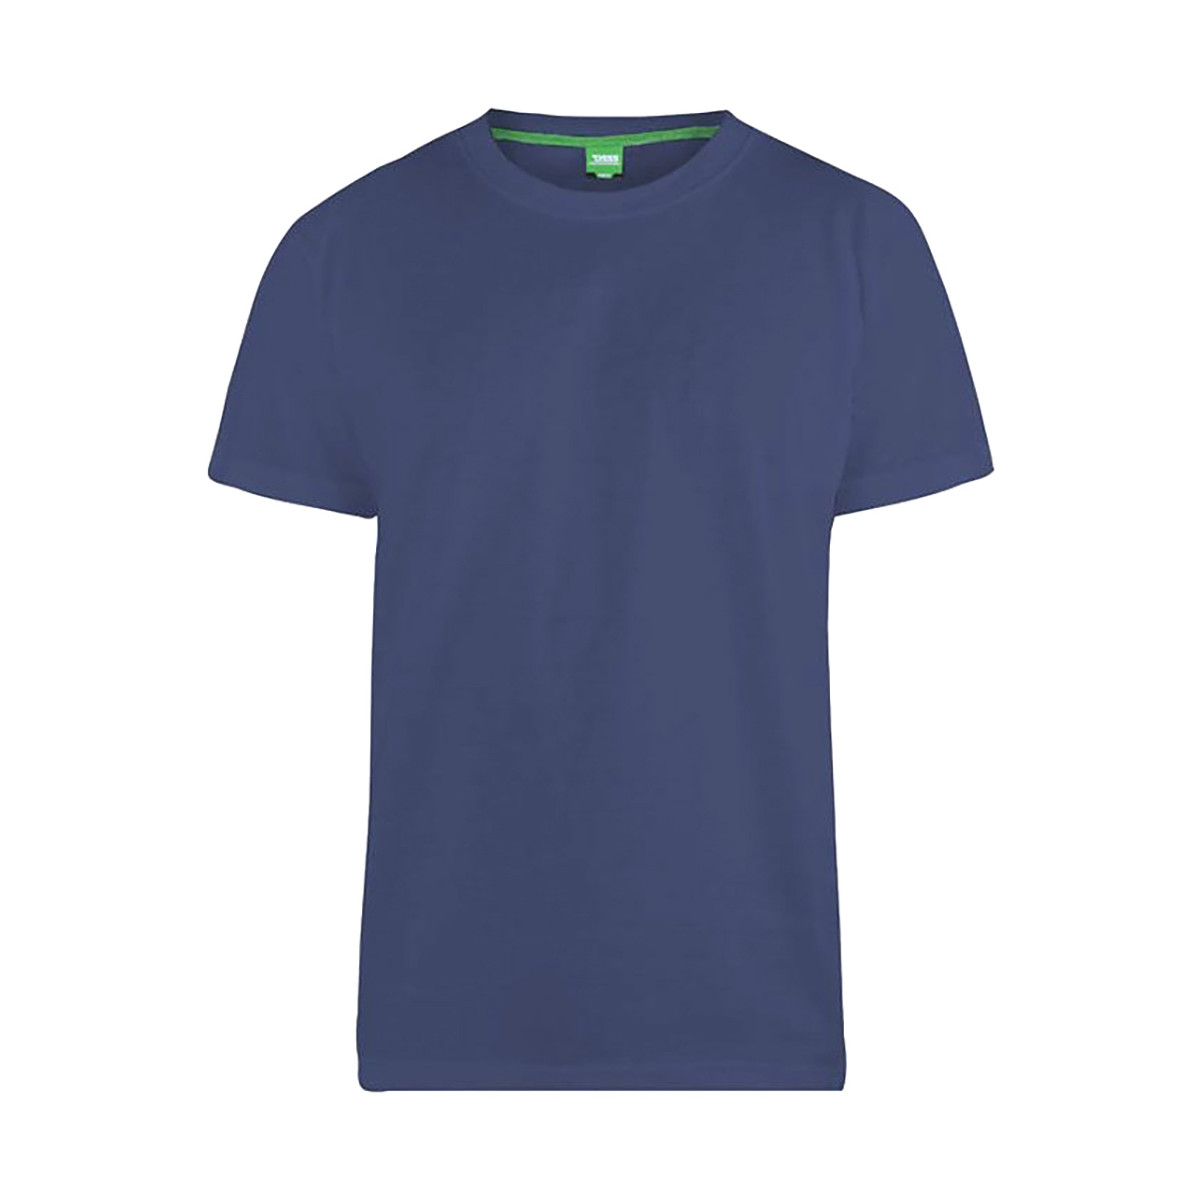 Vêtements Homme T-shirts manches longues Duke DC143 Bleu